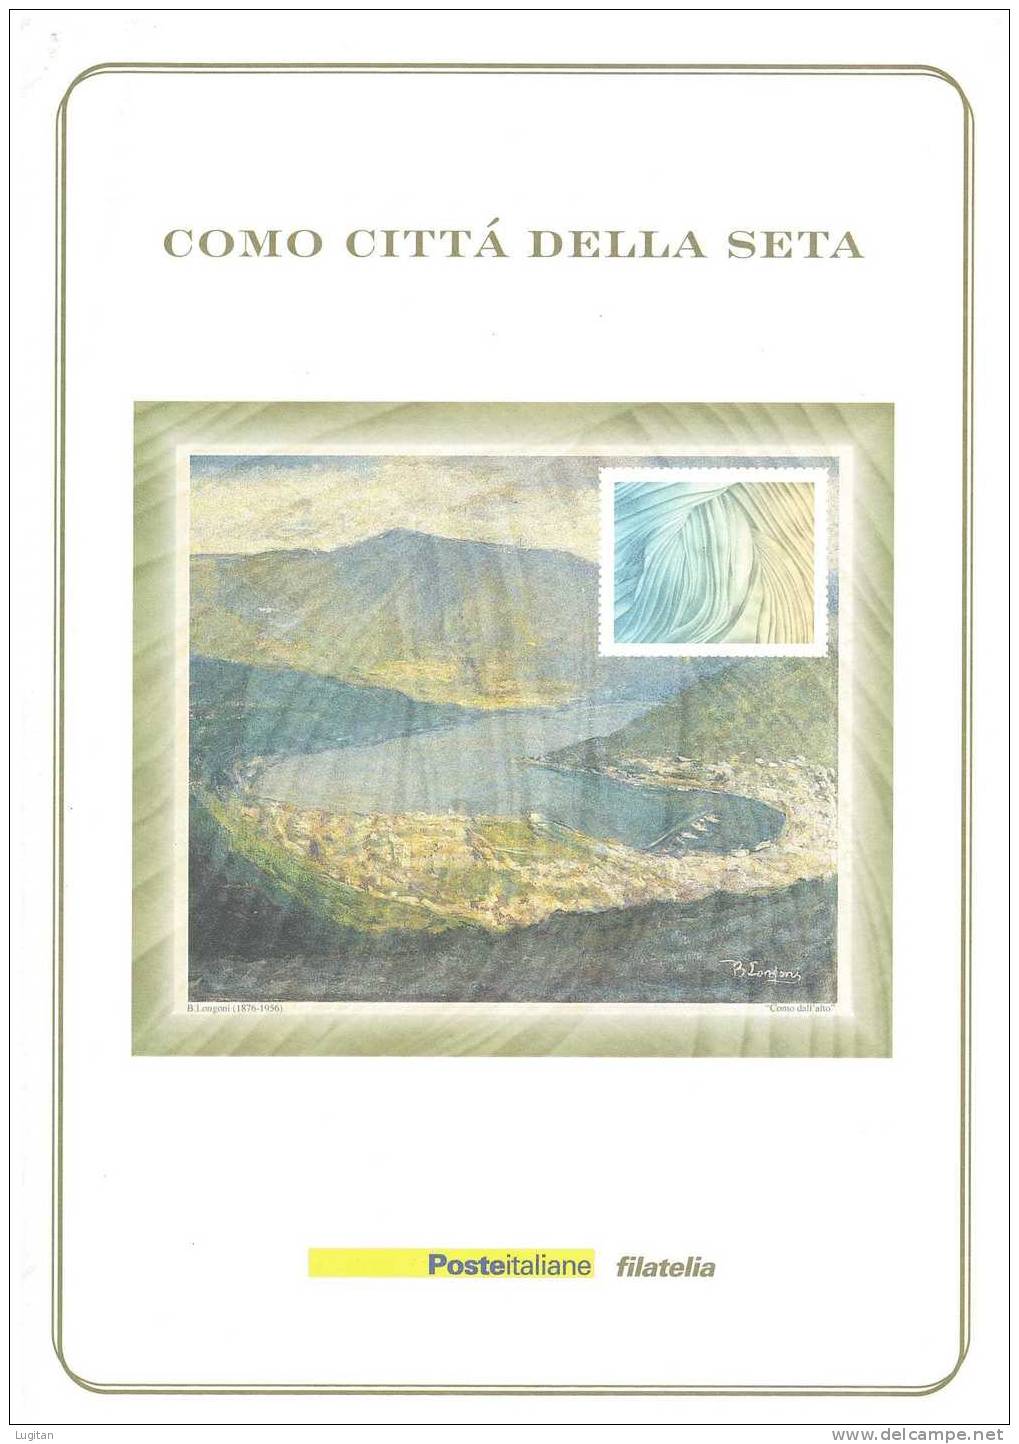 Filatelia -  COMO CITTA' DELLA SETA -  ANNO 2001  SPECIALE OFFERTA DI FOLDERS EMESSI DALLE POSTE ITALIANE - Folder